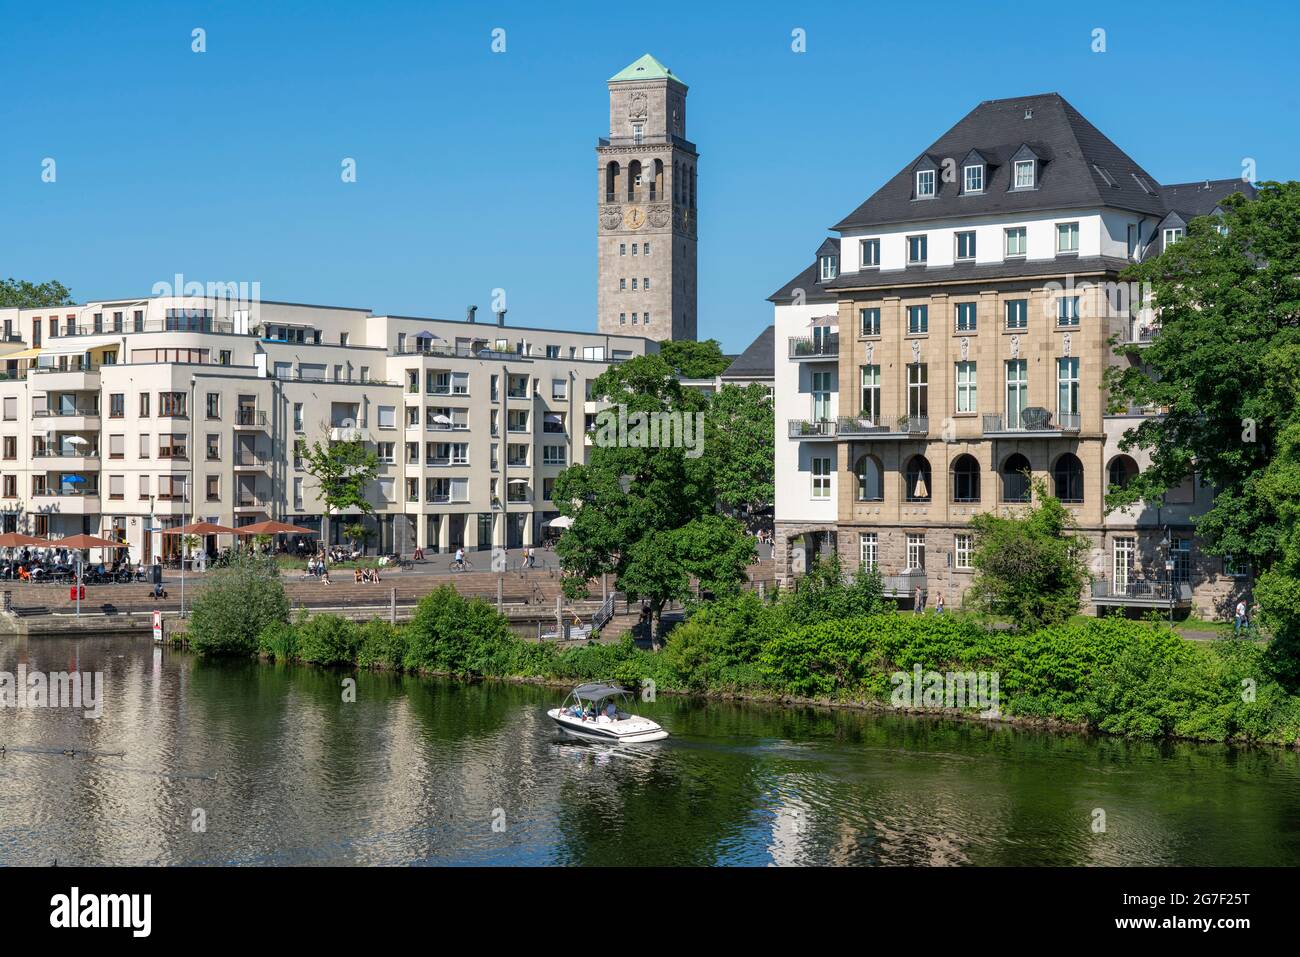 Das Stadtzentrum von Mülheim an der Ruhr, Ruhrpromenade, Wohn- und Geschäftshäuser, Gastronomie, Neubauten, Ruhrbania-Projekt, City Harbo Stockfoto